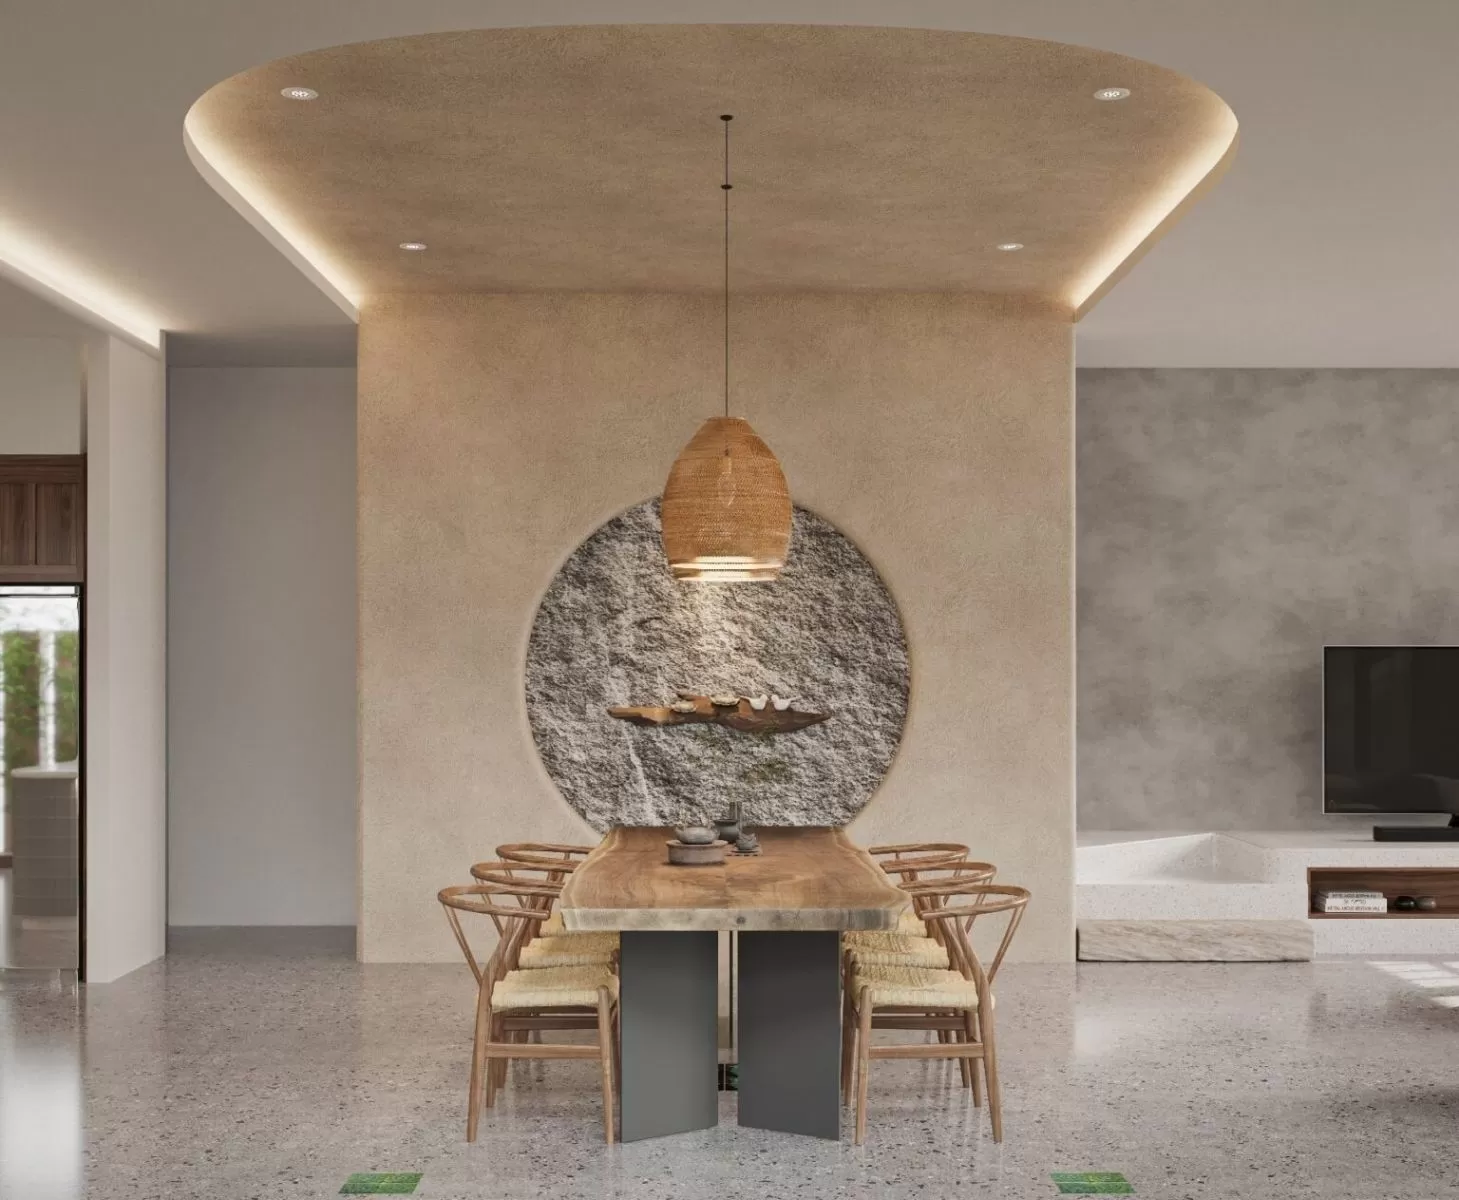 Phong cách nội thất tối giản thể hiện ở chiếc bàn nguyên khối và mảng tường đá sần choán toàn bộ không gian phòng ăn